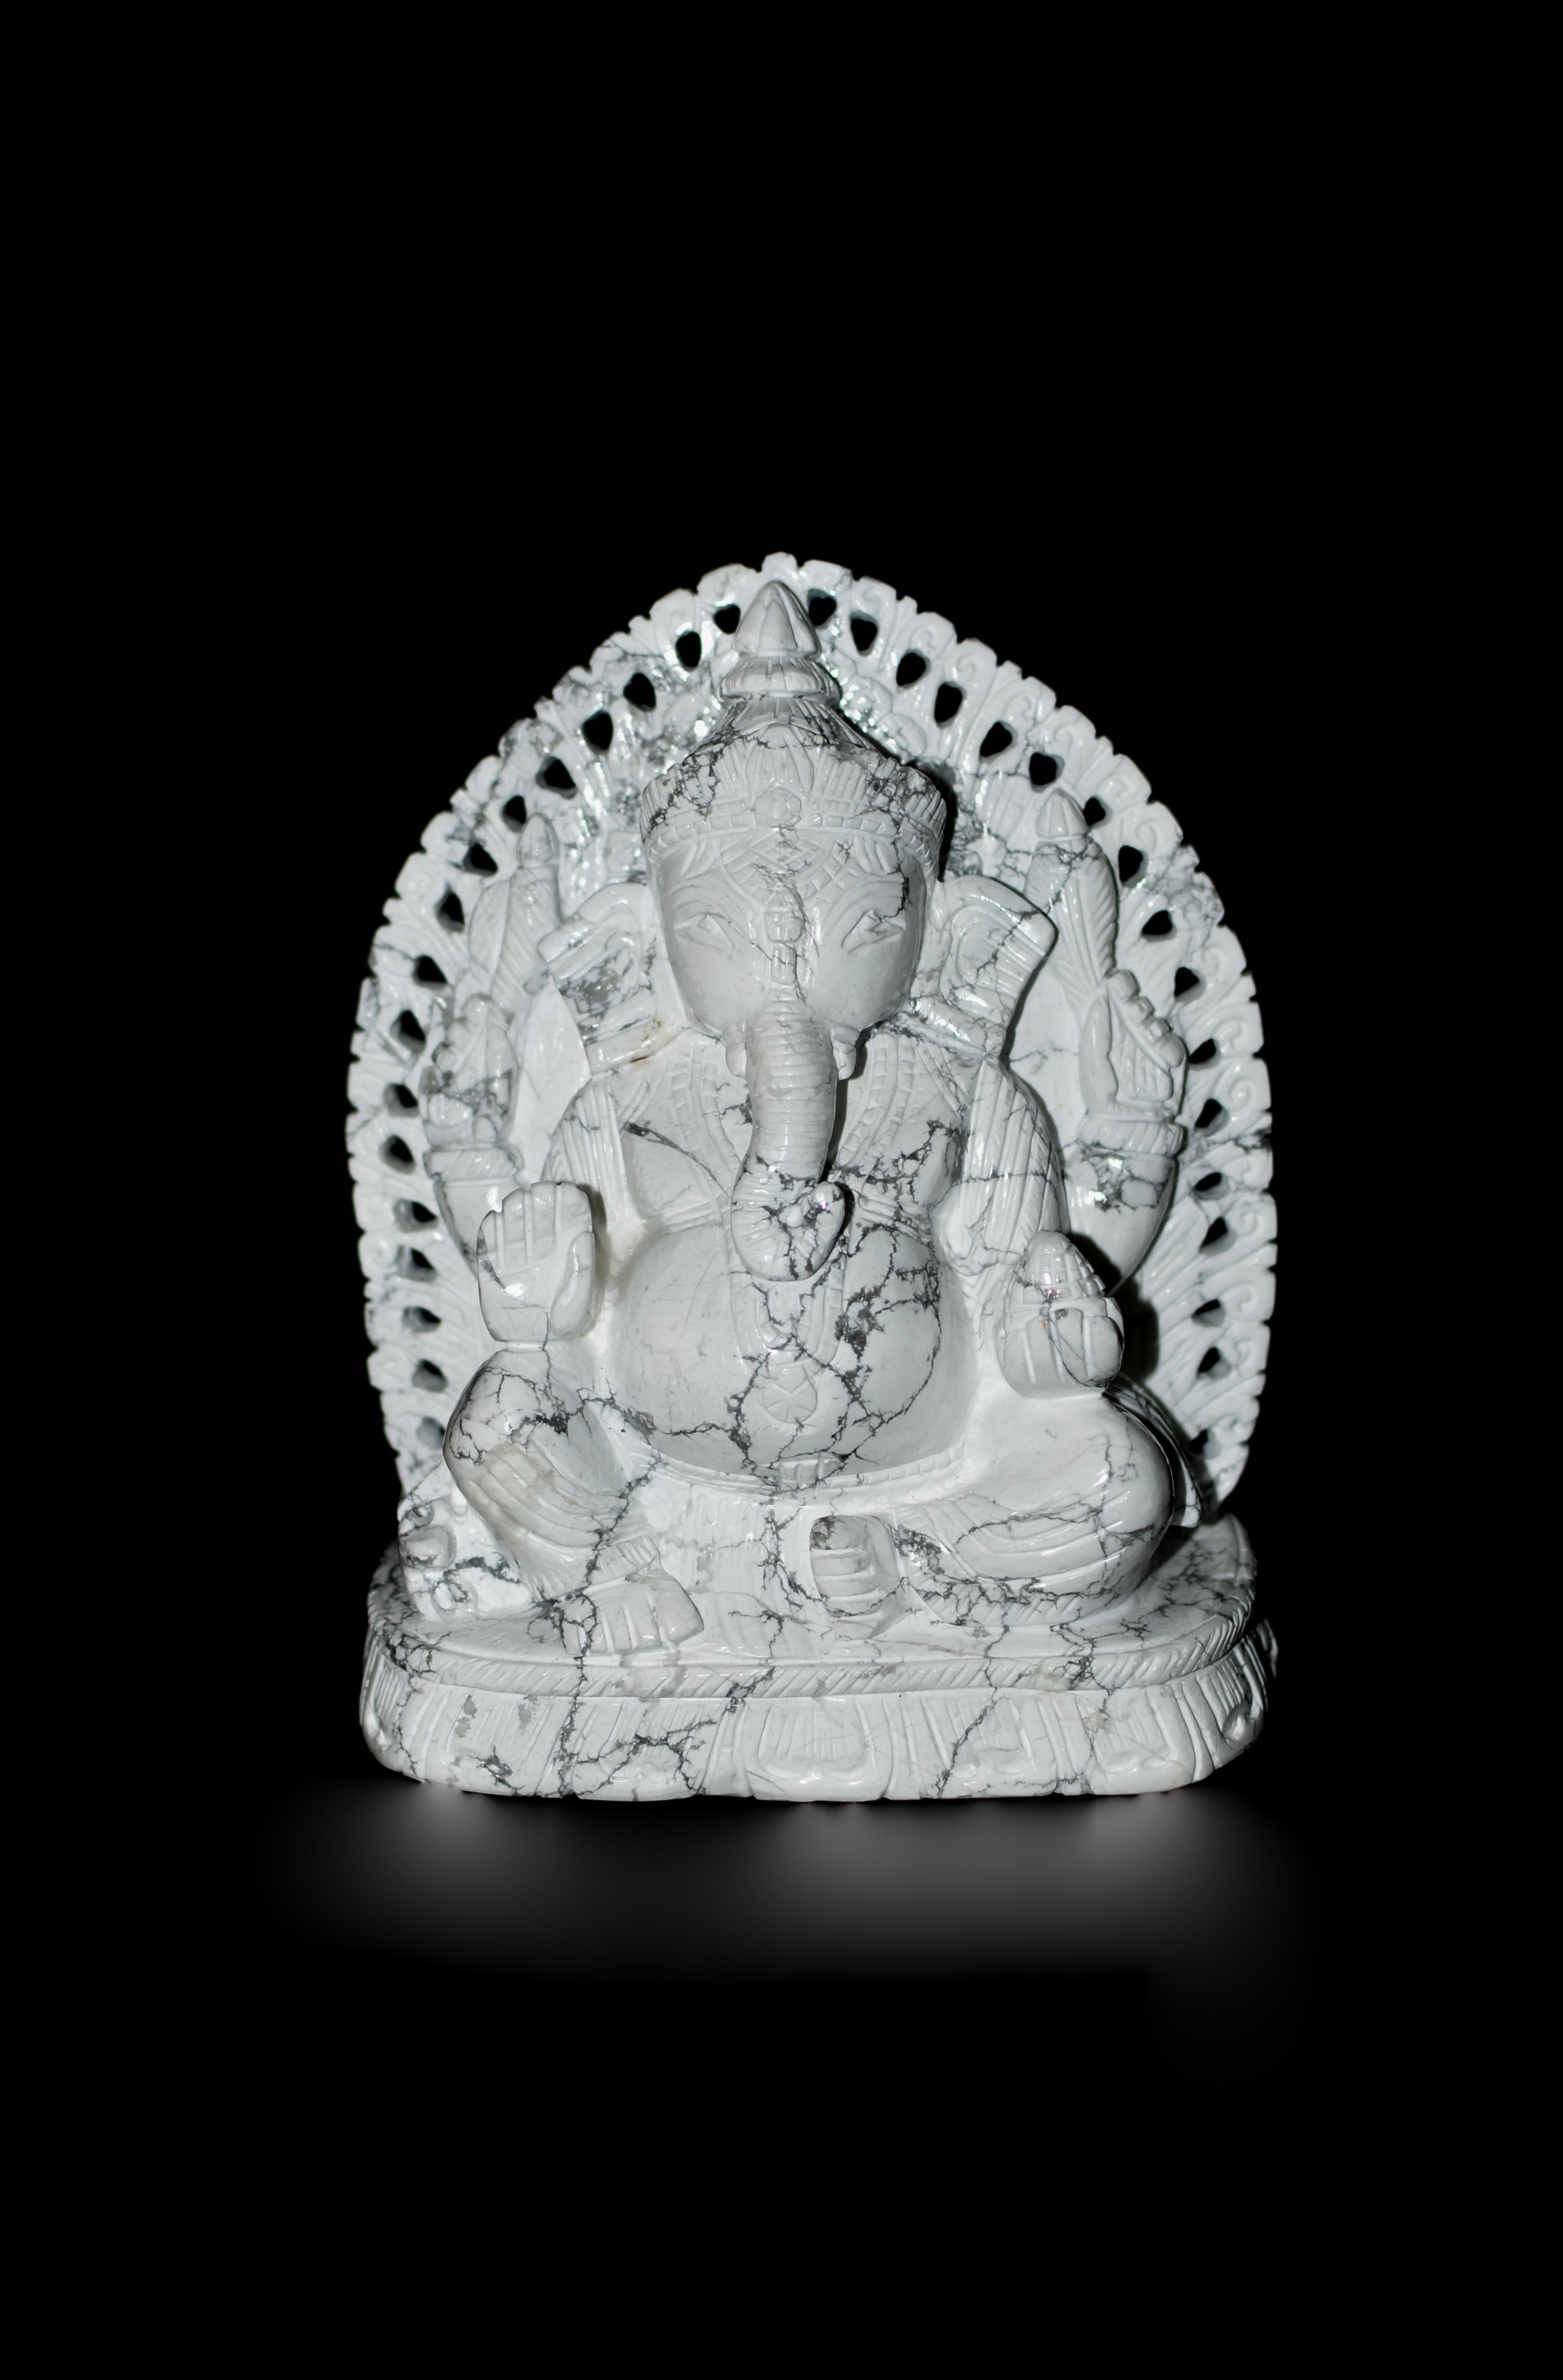 Une extraordinaire sculpture de Ganesh en pierre précieuse Howlite, unique en son genre, de 7,2 livres, fabriquée à partir de la pierre précieuse Howlite la plus fine, la plus rare et la plus naturelle. Chaque détail est minutieusement rendu,